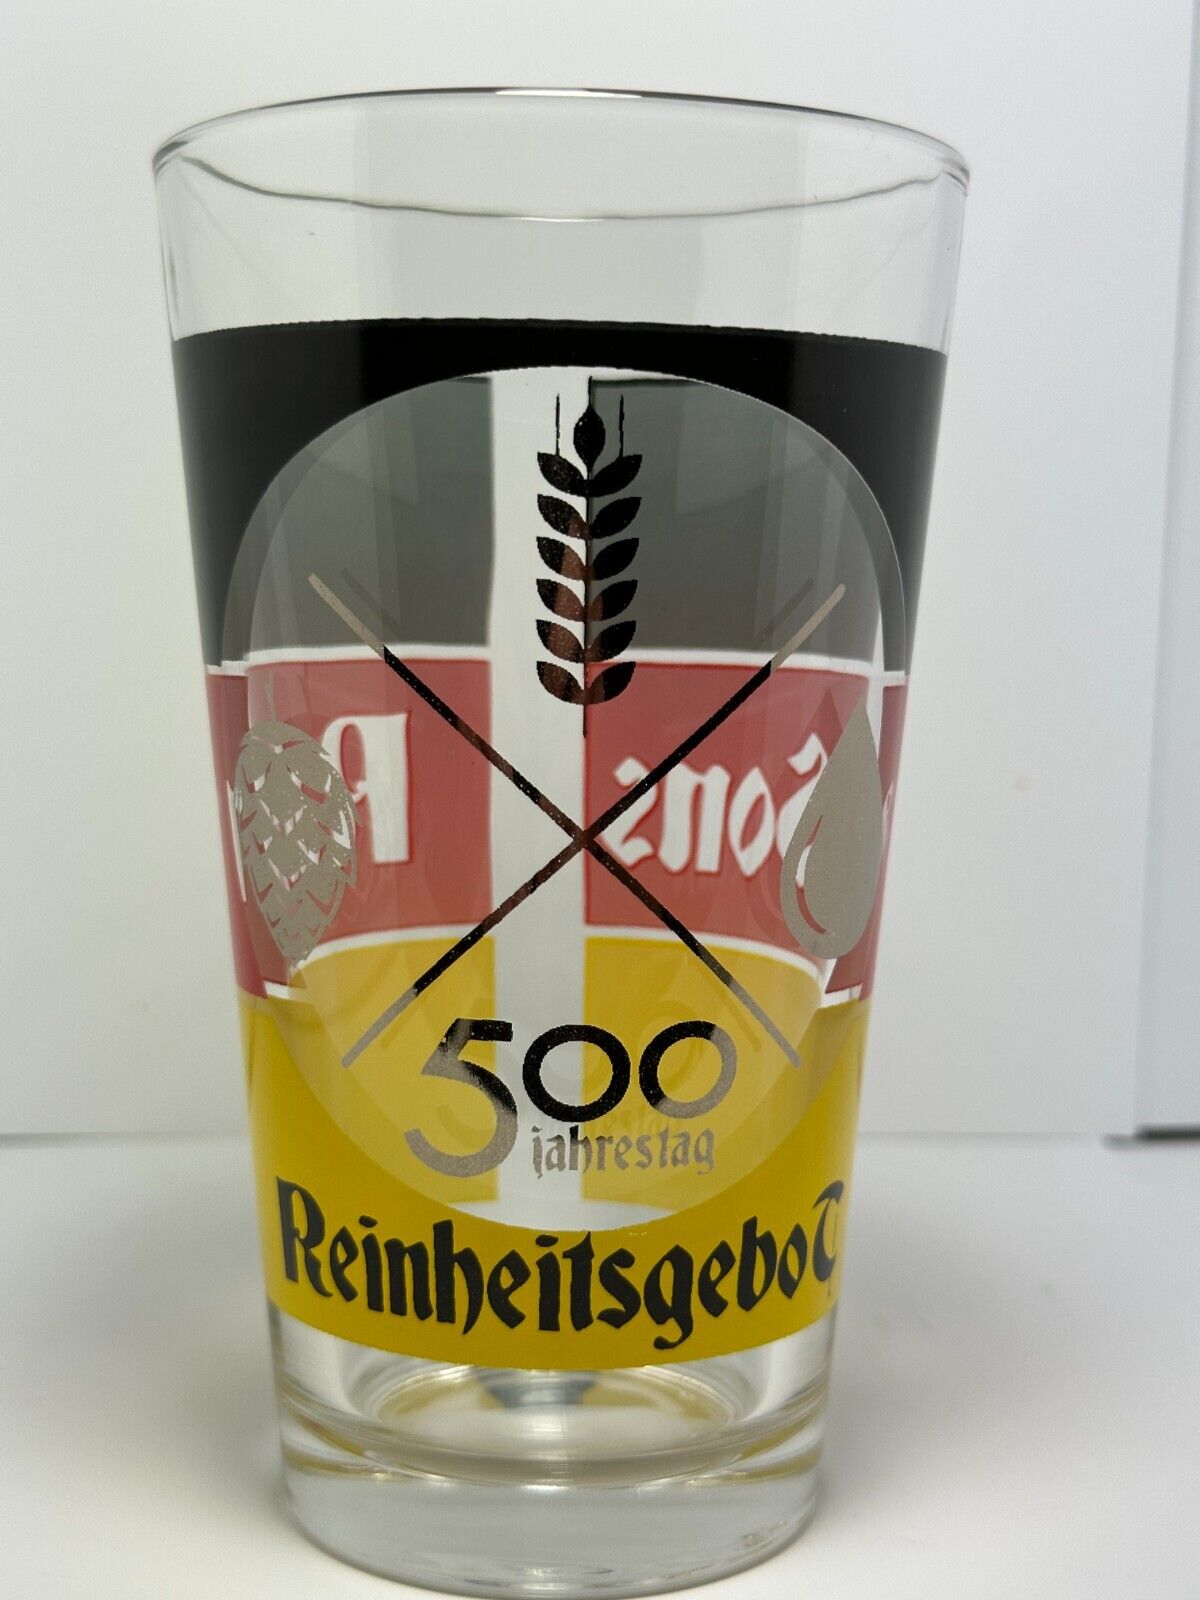 Rahr & Sons Reinheitsgebot 500 Jahrestag German Craft Beer Pint Shaker Glass